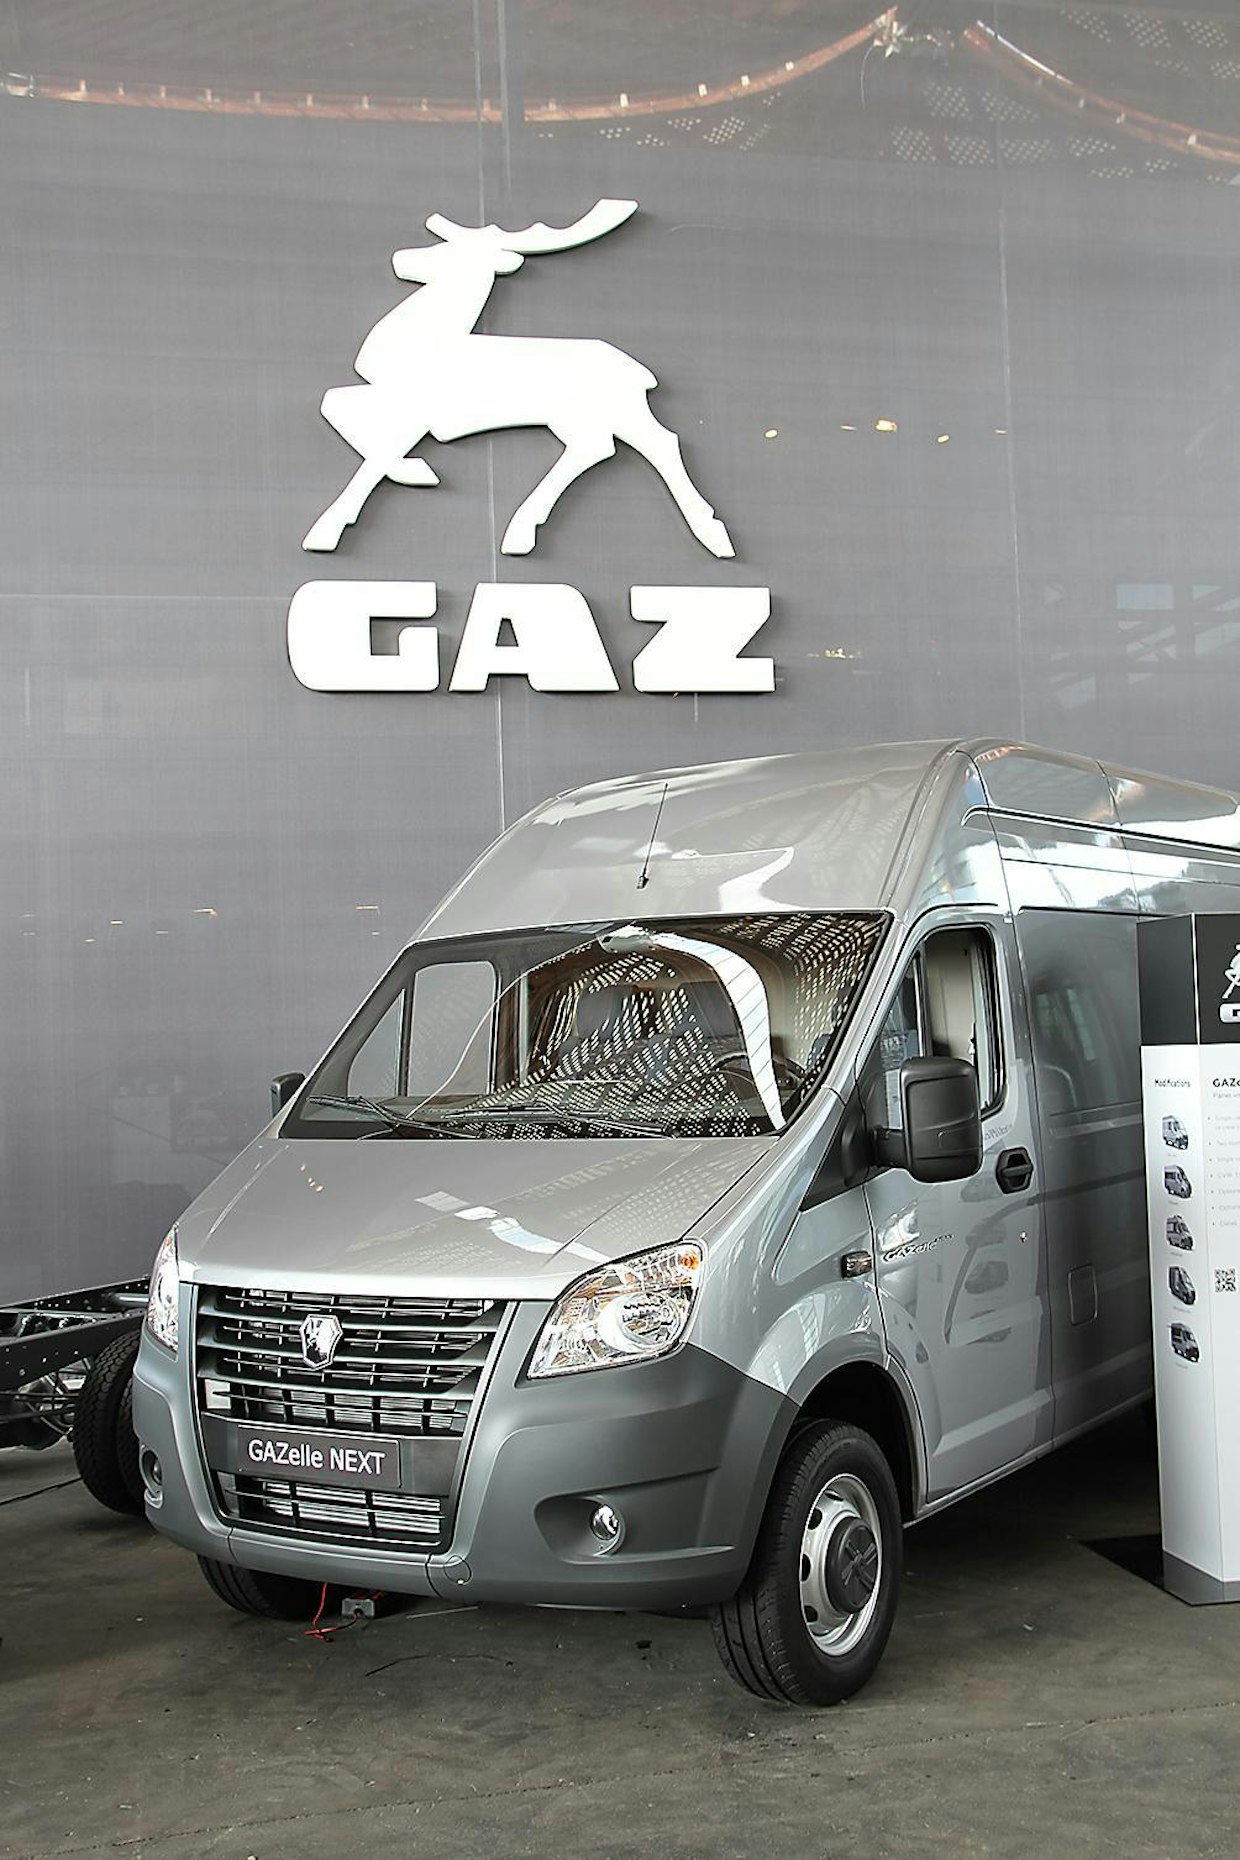 Venäläinen GAZ kurkkii laajemmille markkinoille. Uudistettu GAZelle täyttää Euro-6- päästönormit. Konepeiton alla on Volkswagenin 2,0-litrainen 136 hv turbodiesel, jonka parina on uusi 6-nopeuksinen manuaalivaihteisto. Tarjolla on umpipakettiauton lisäksi alustamalli sekä bussiversio.